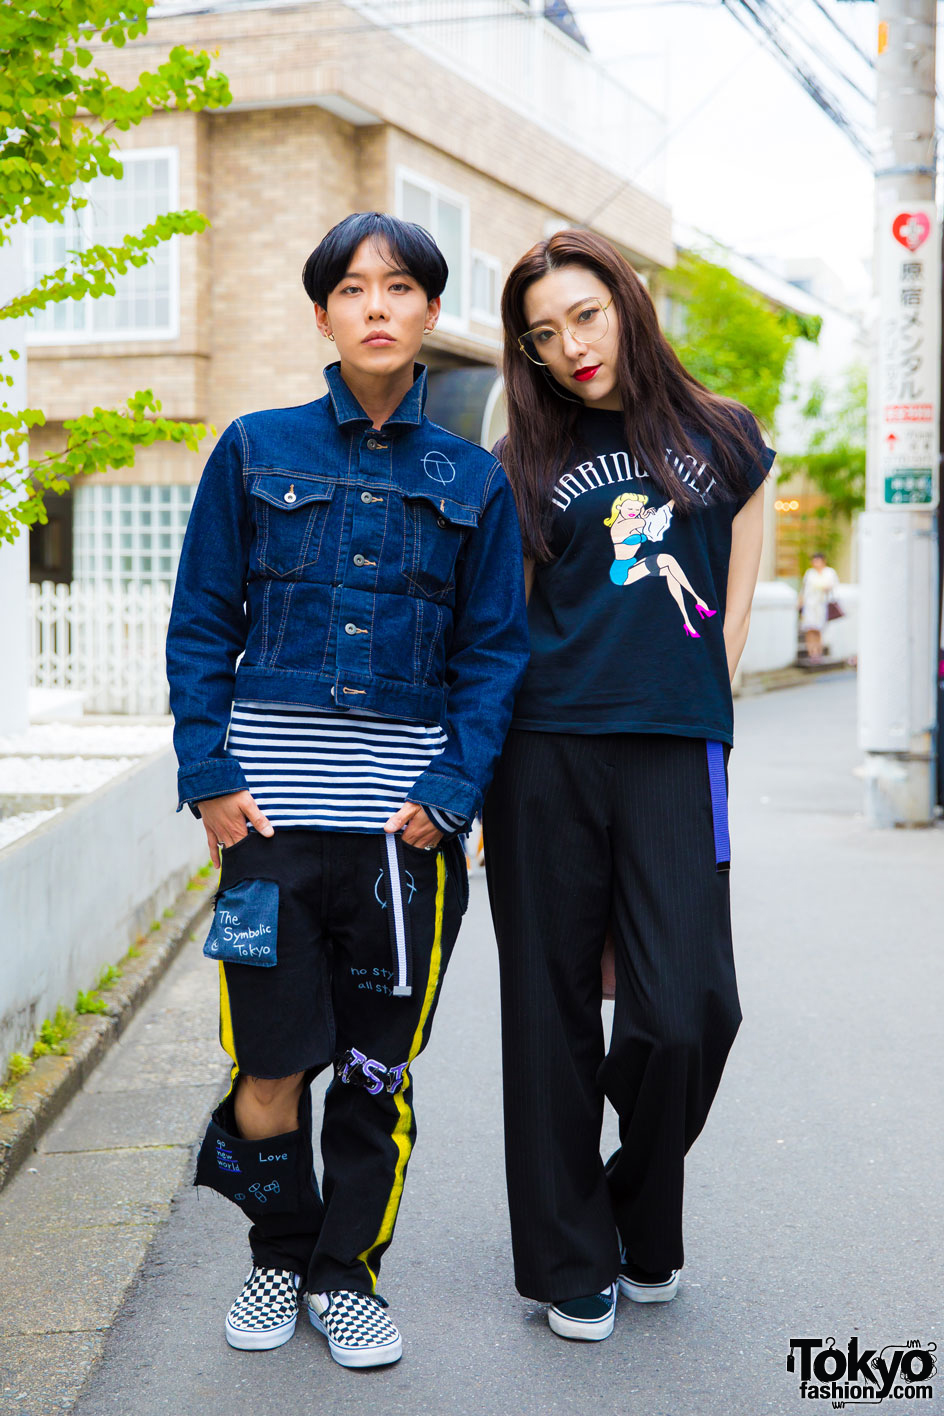 Harajuku Streetwear Looks w/ The Symbolic Tokyo, Vans, Chrome Hearts, Sly, Alexander Wang & Amijed